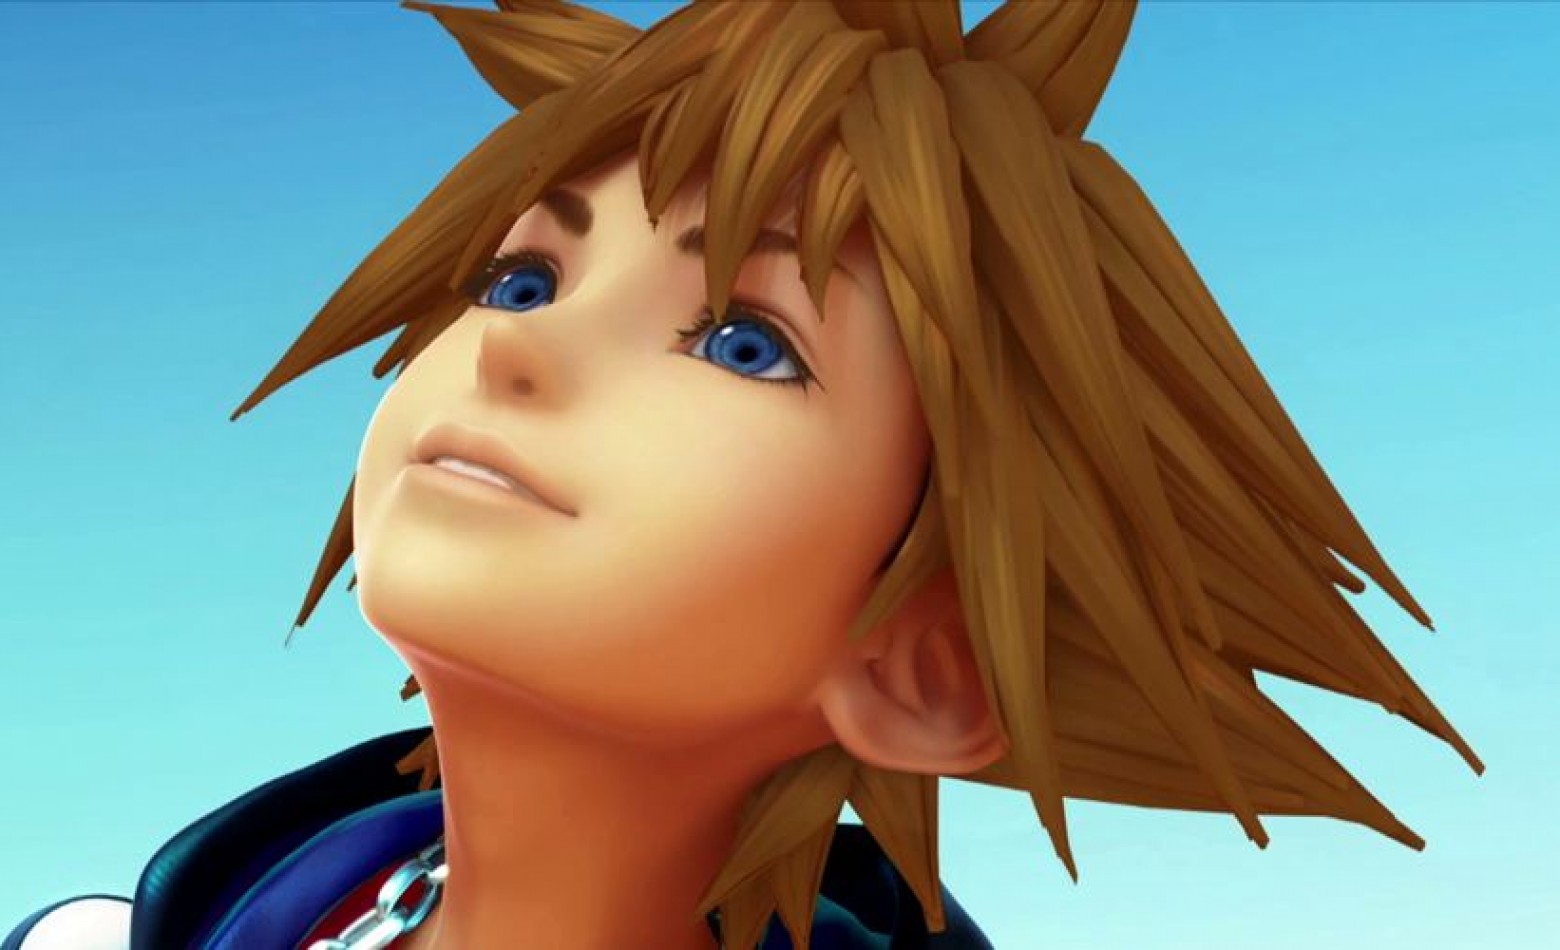 Produção de Kingdom Hearts 3 acontece “a todo vapor”